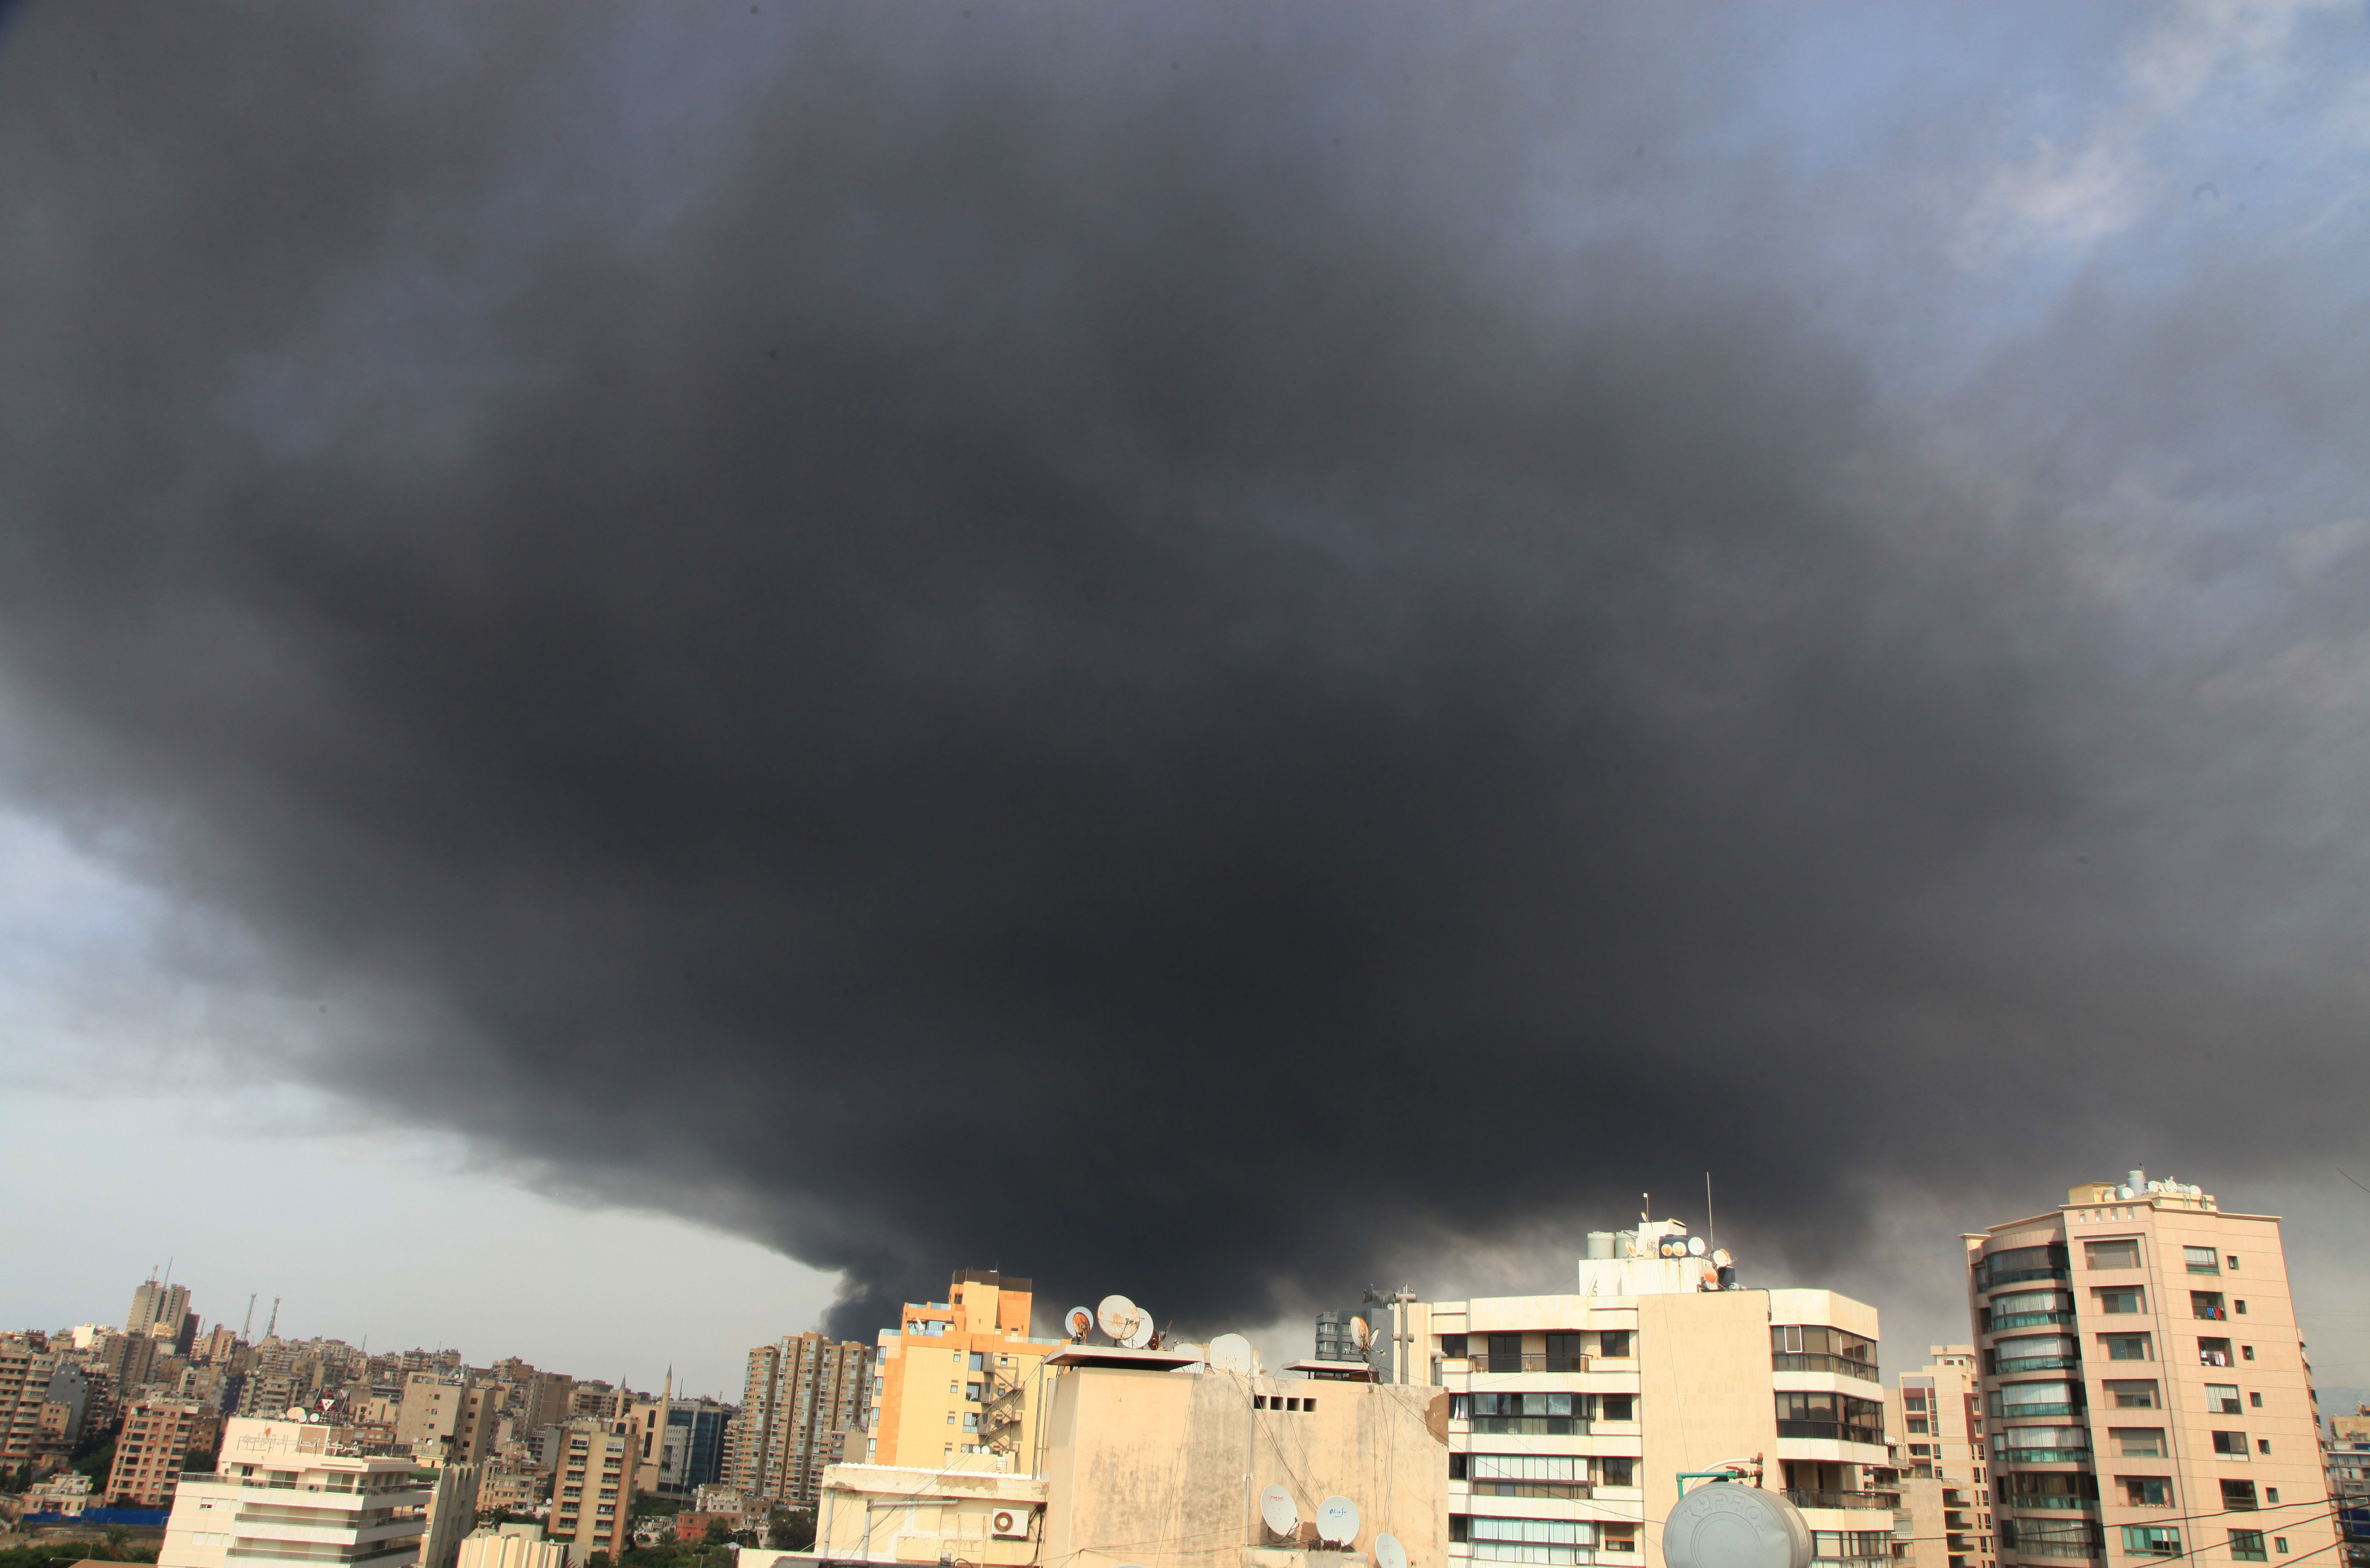 9月10日，在黎巴嫩首都貝魯特，一名外賣快遞員準備用手機拍攝港口區一處倉庫起火後產生的濃煙。 黎巴嫩首都貝魯特港口區一處倉庫10日發生火災，暫時沒有人員傷亡報告。據當地媒體報道，火災發生在當地時間13時30分左右。黎軍方在社交媒體推特上發表聲明說，起火地點為港口免稅區內存放輪胎和油料的倉庫。 新華社